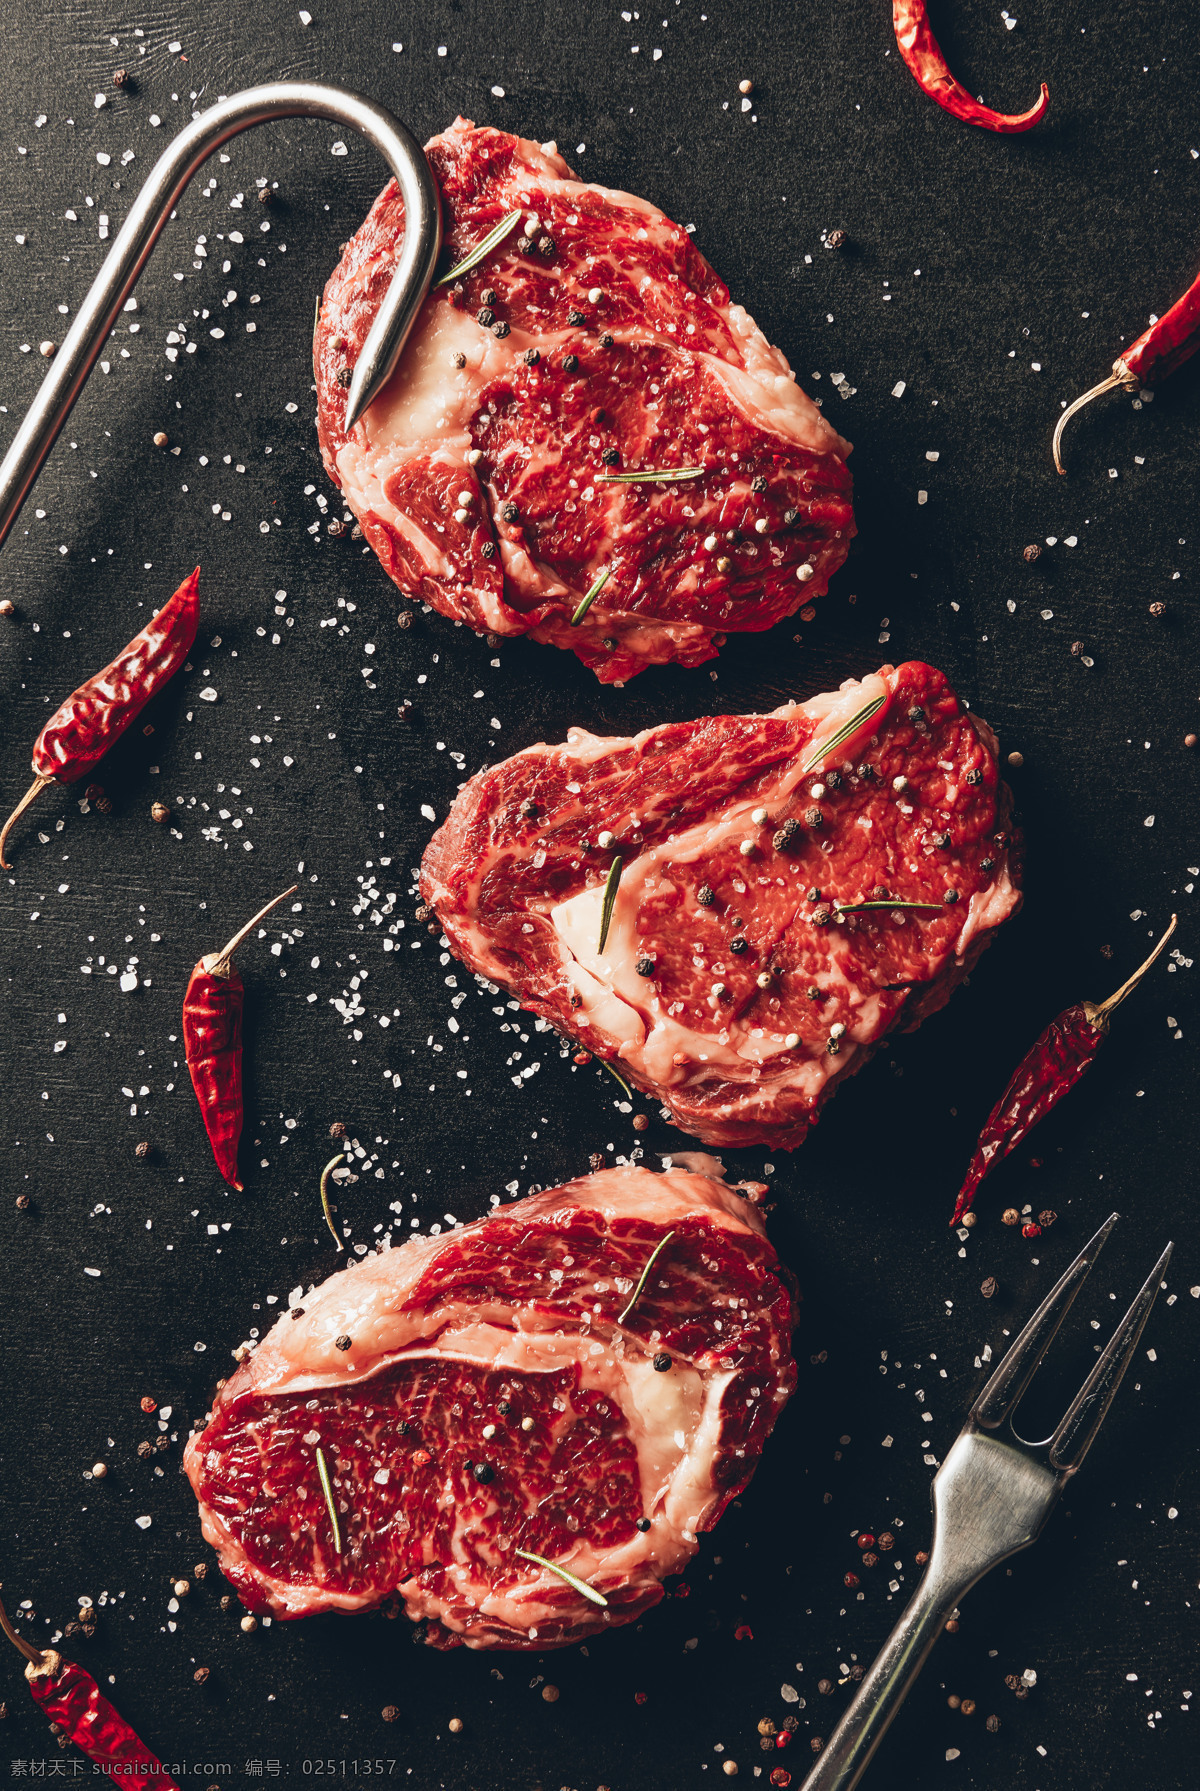 牛肉 肉 块 美食 背景 海报 素材图片 肉块 食物 中药 水果 类 餐饮美食